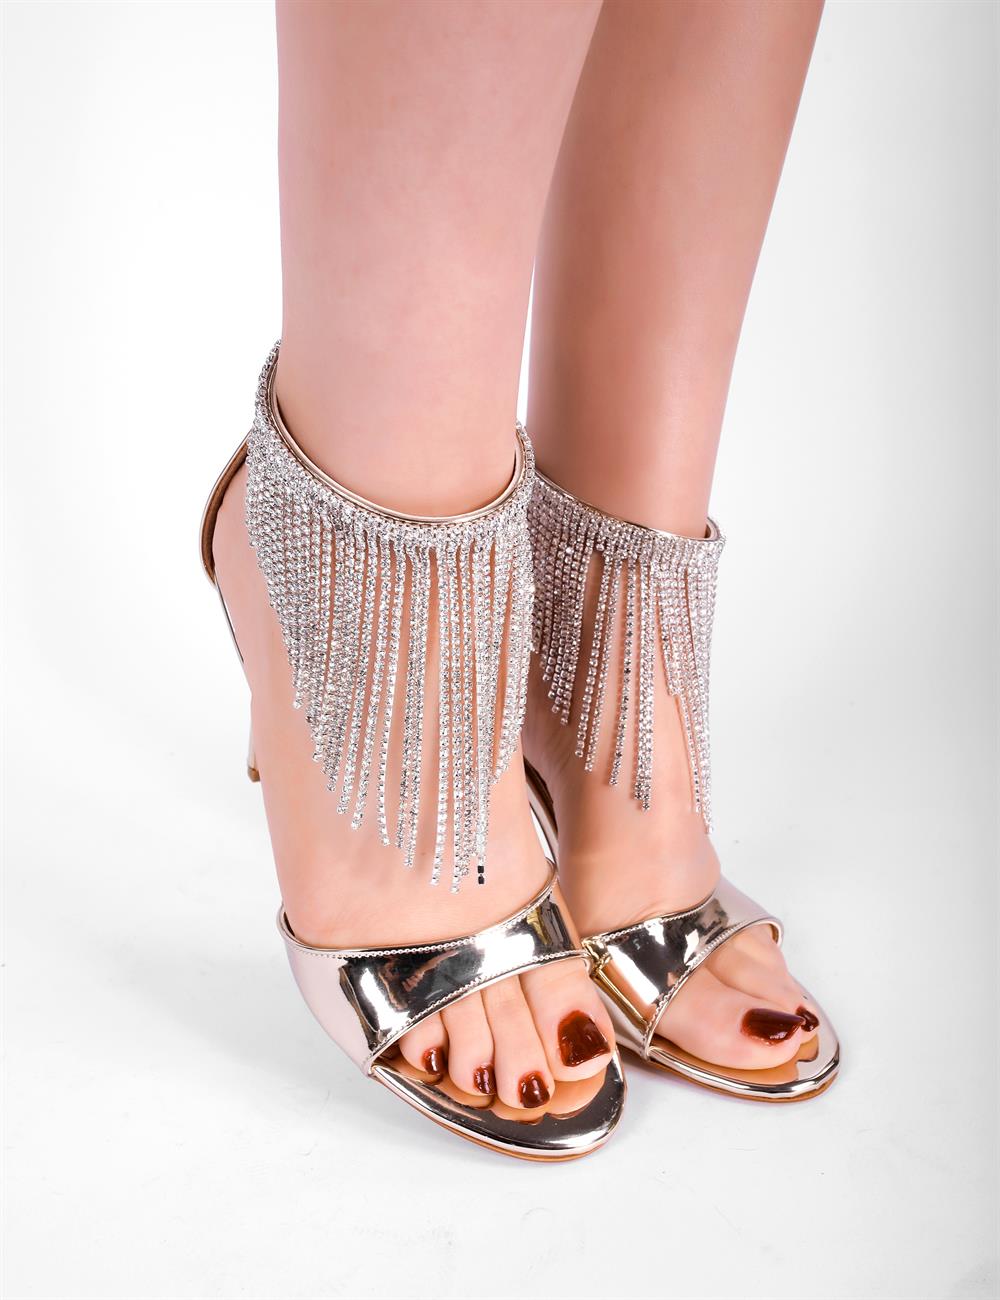 Fenny Kristal Taşlı Topuklu Ayakkabı Gold - Kadın Ayakkabı